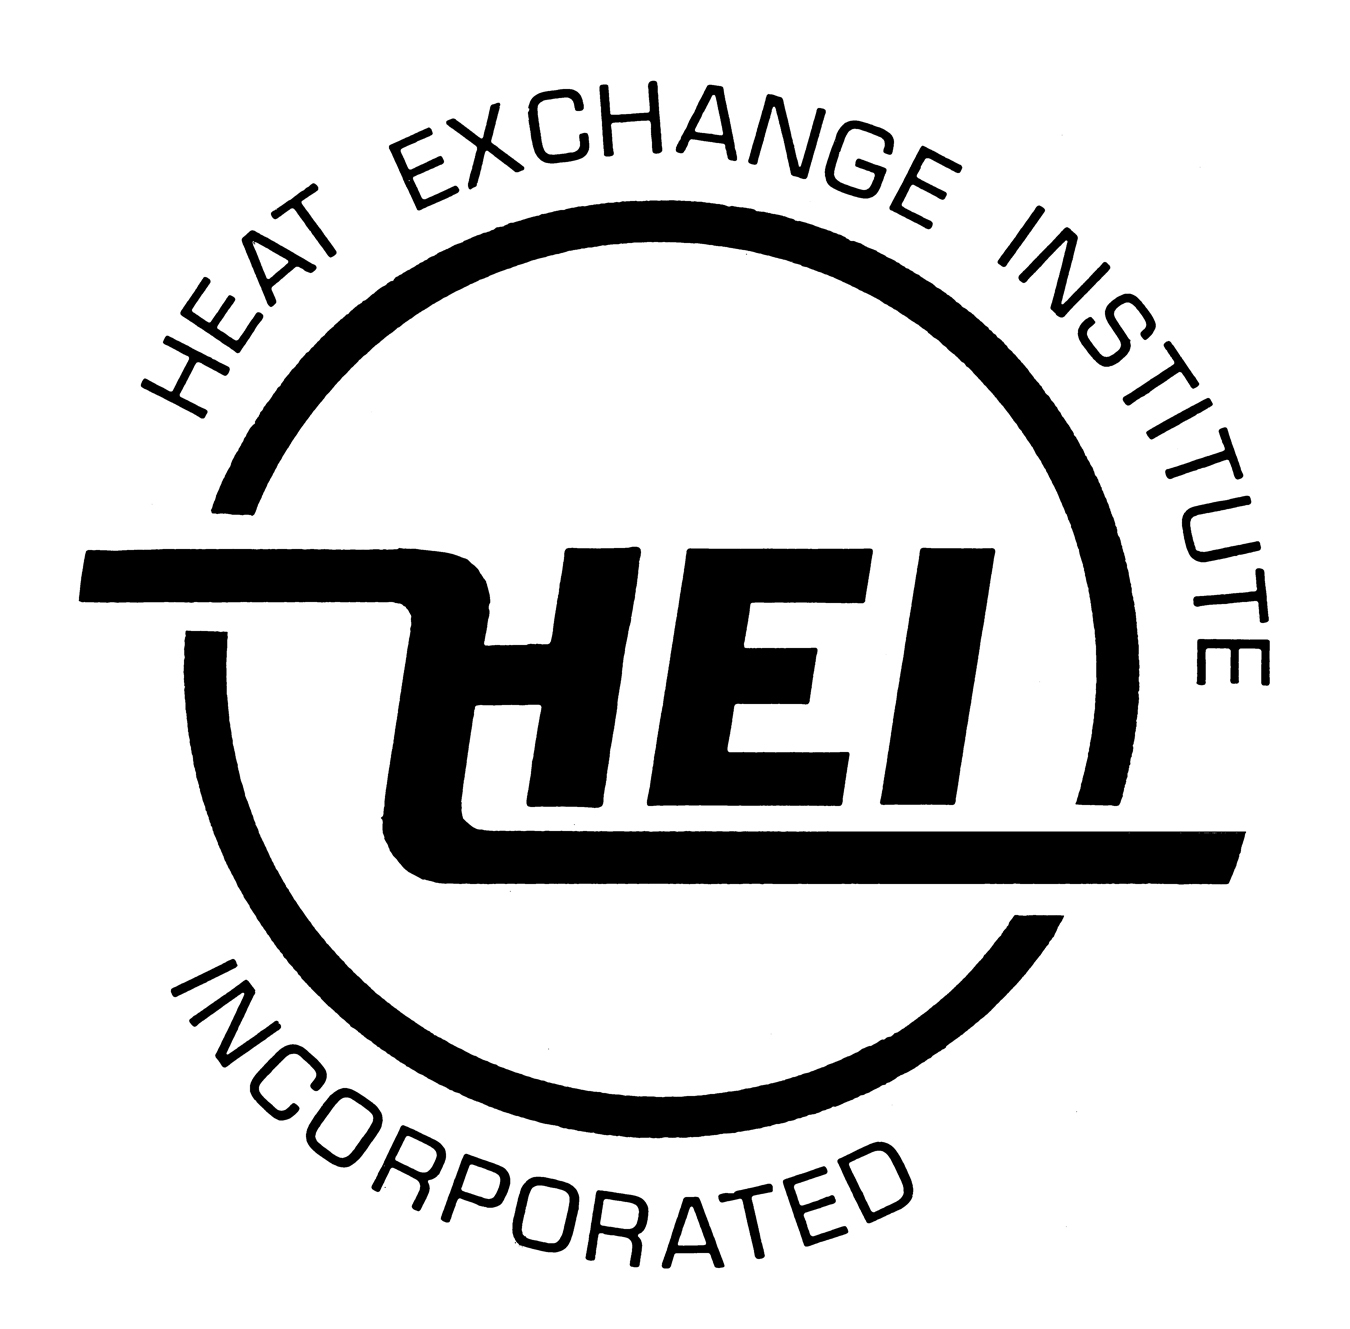 دانلود استاندارد HEI 2954 10th 2016 فروش استاندارد مبدل حرارتي HEI 2954 نسخه 10 خرید استاندارد Standards and Typical Specifications for Tray Type Deaerators